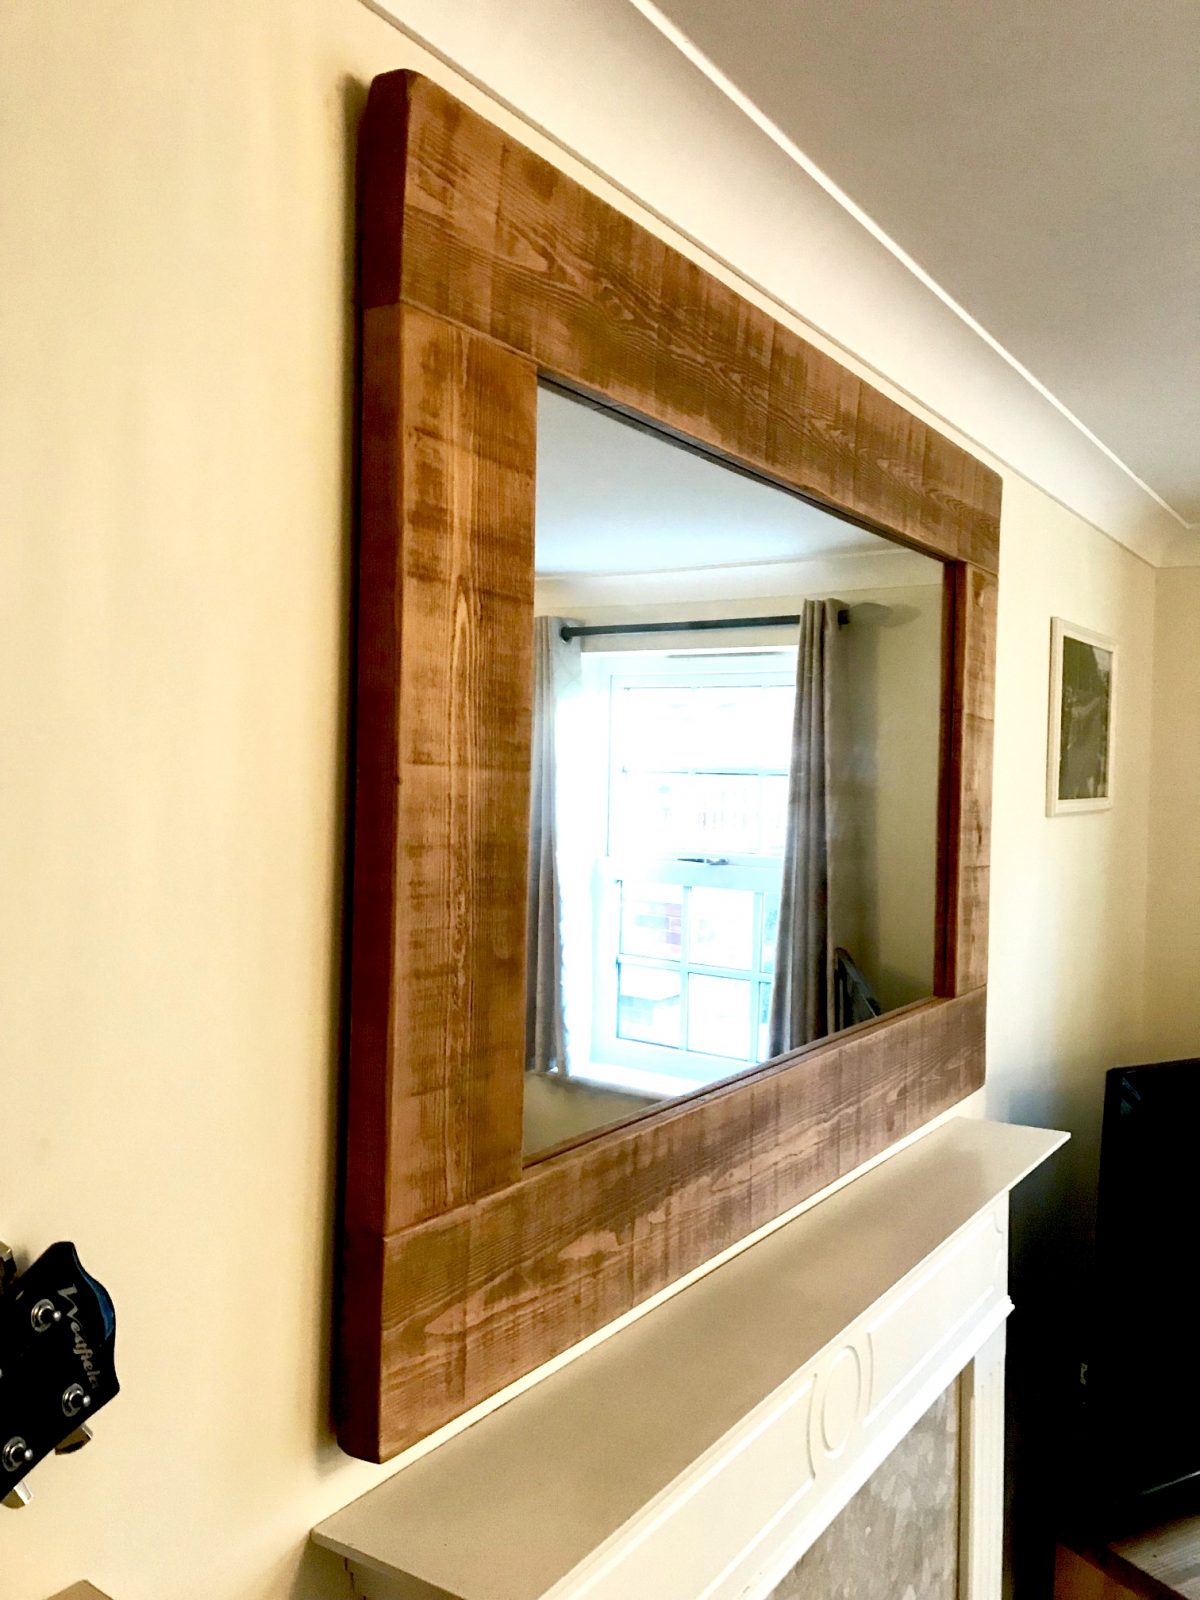 Rustic Reclaimed Wood Mirror Large Solid Oak Designs